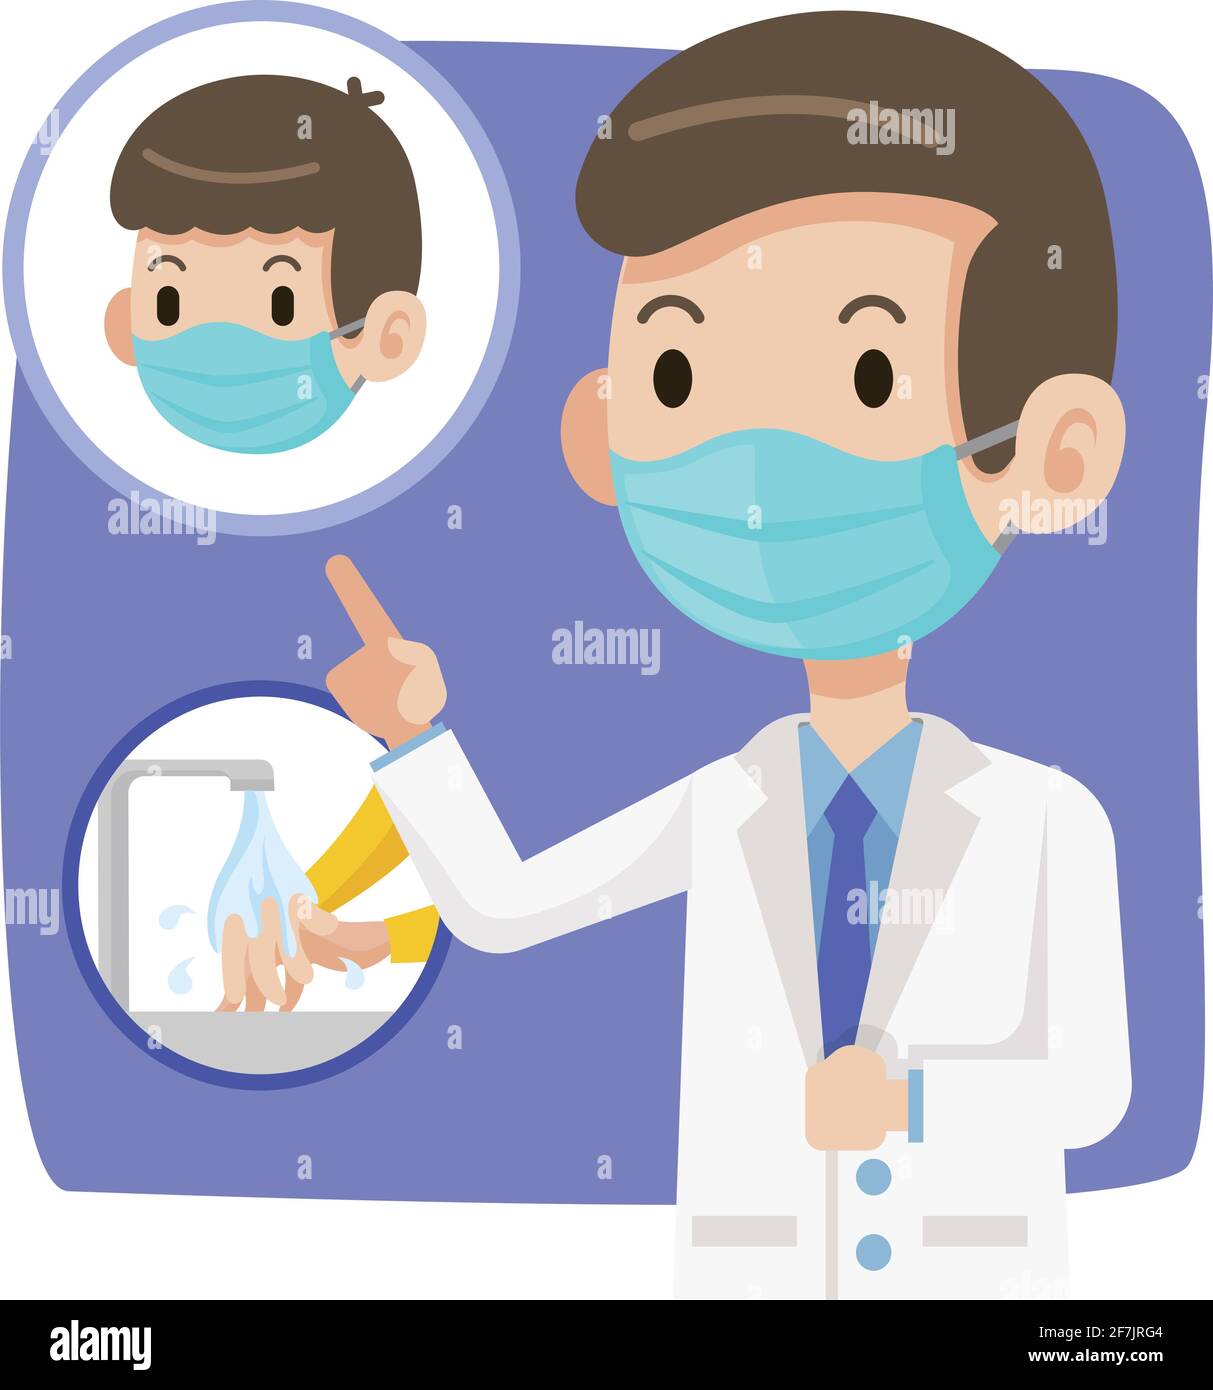 Arzt trägt eine schützende chirurgische Maske und empfehlen Menschen zu tragen Chirurgische Maske und Händewaschen zum Schutz vor Viren-Coronavirus Covid-19 - vect Stock Vektor